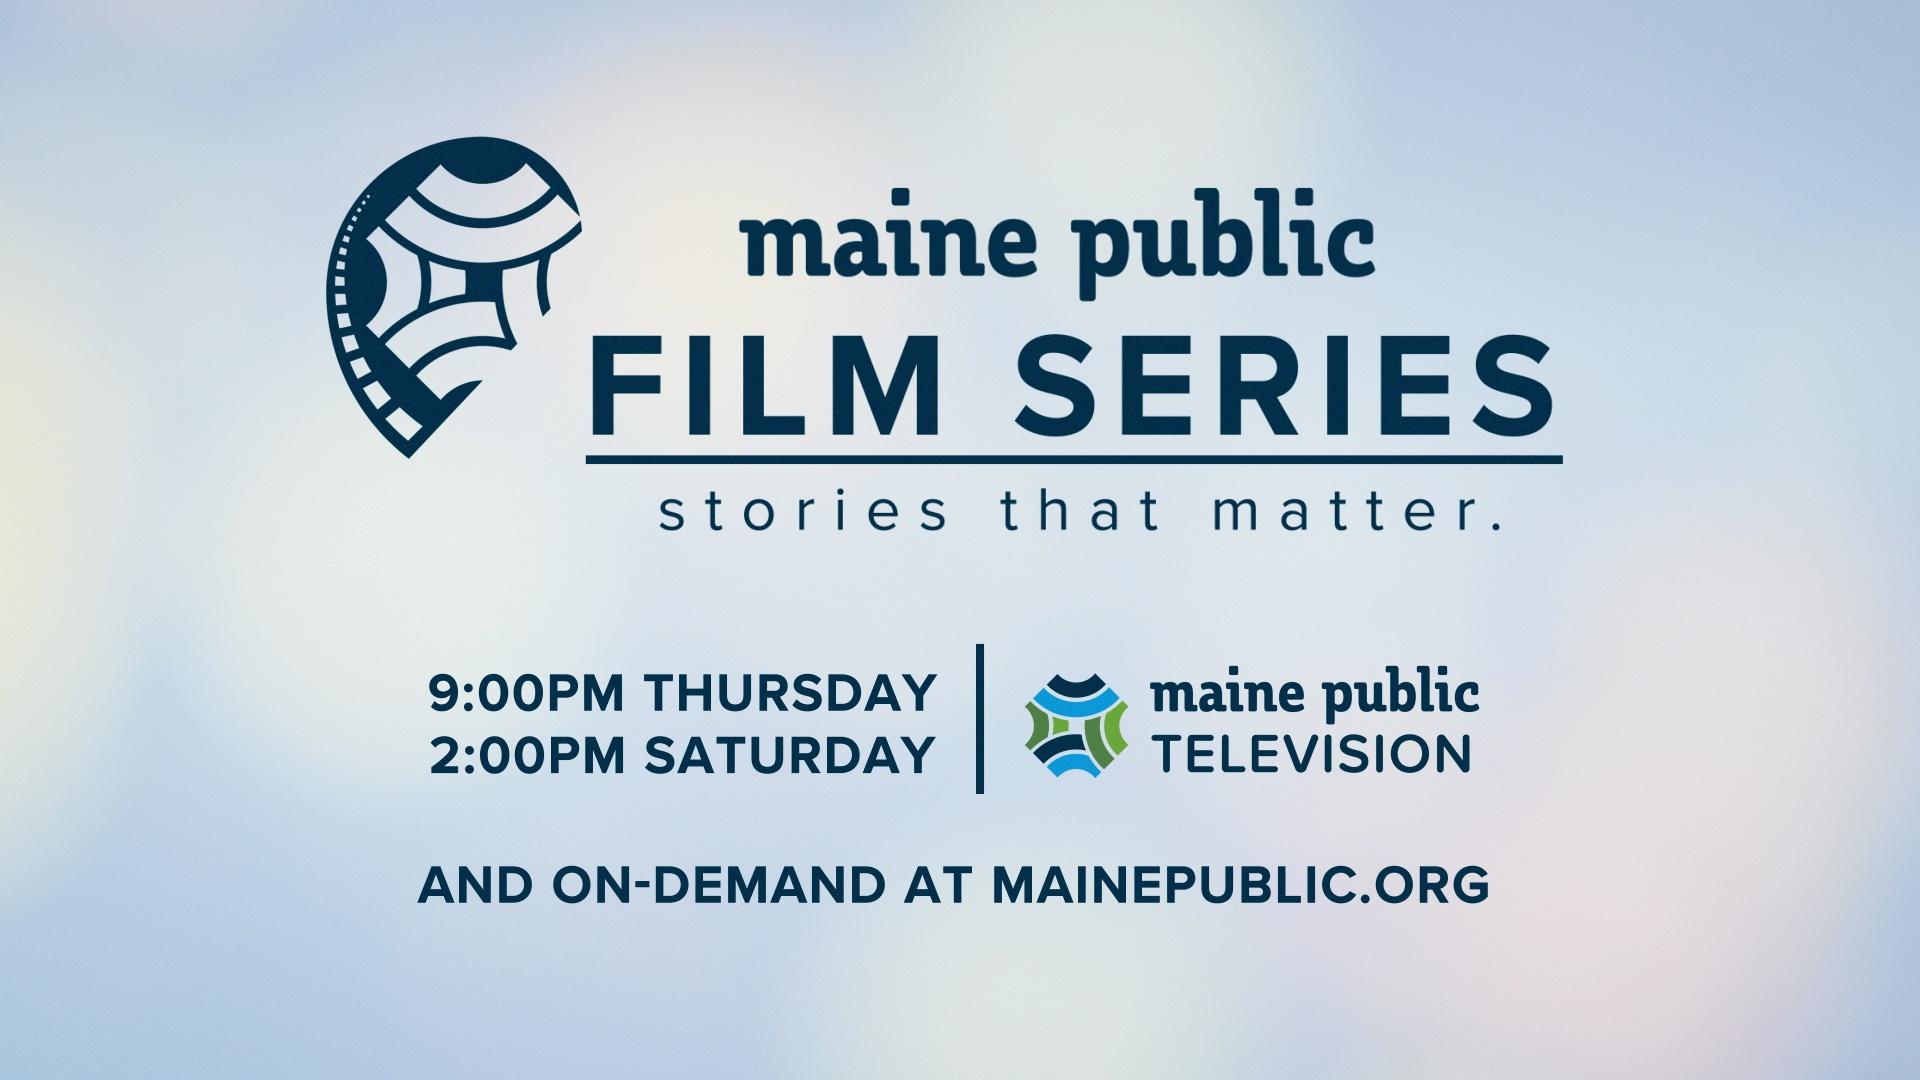 Maine Public Film Series Introducing the Maine Public Film Series PBS